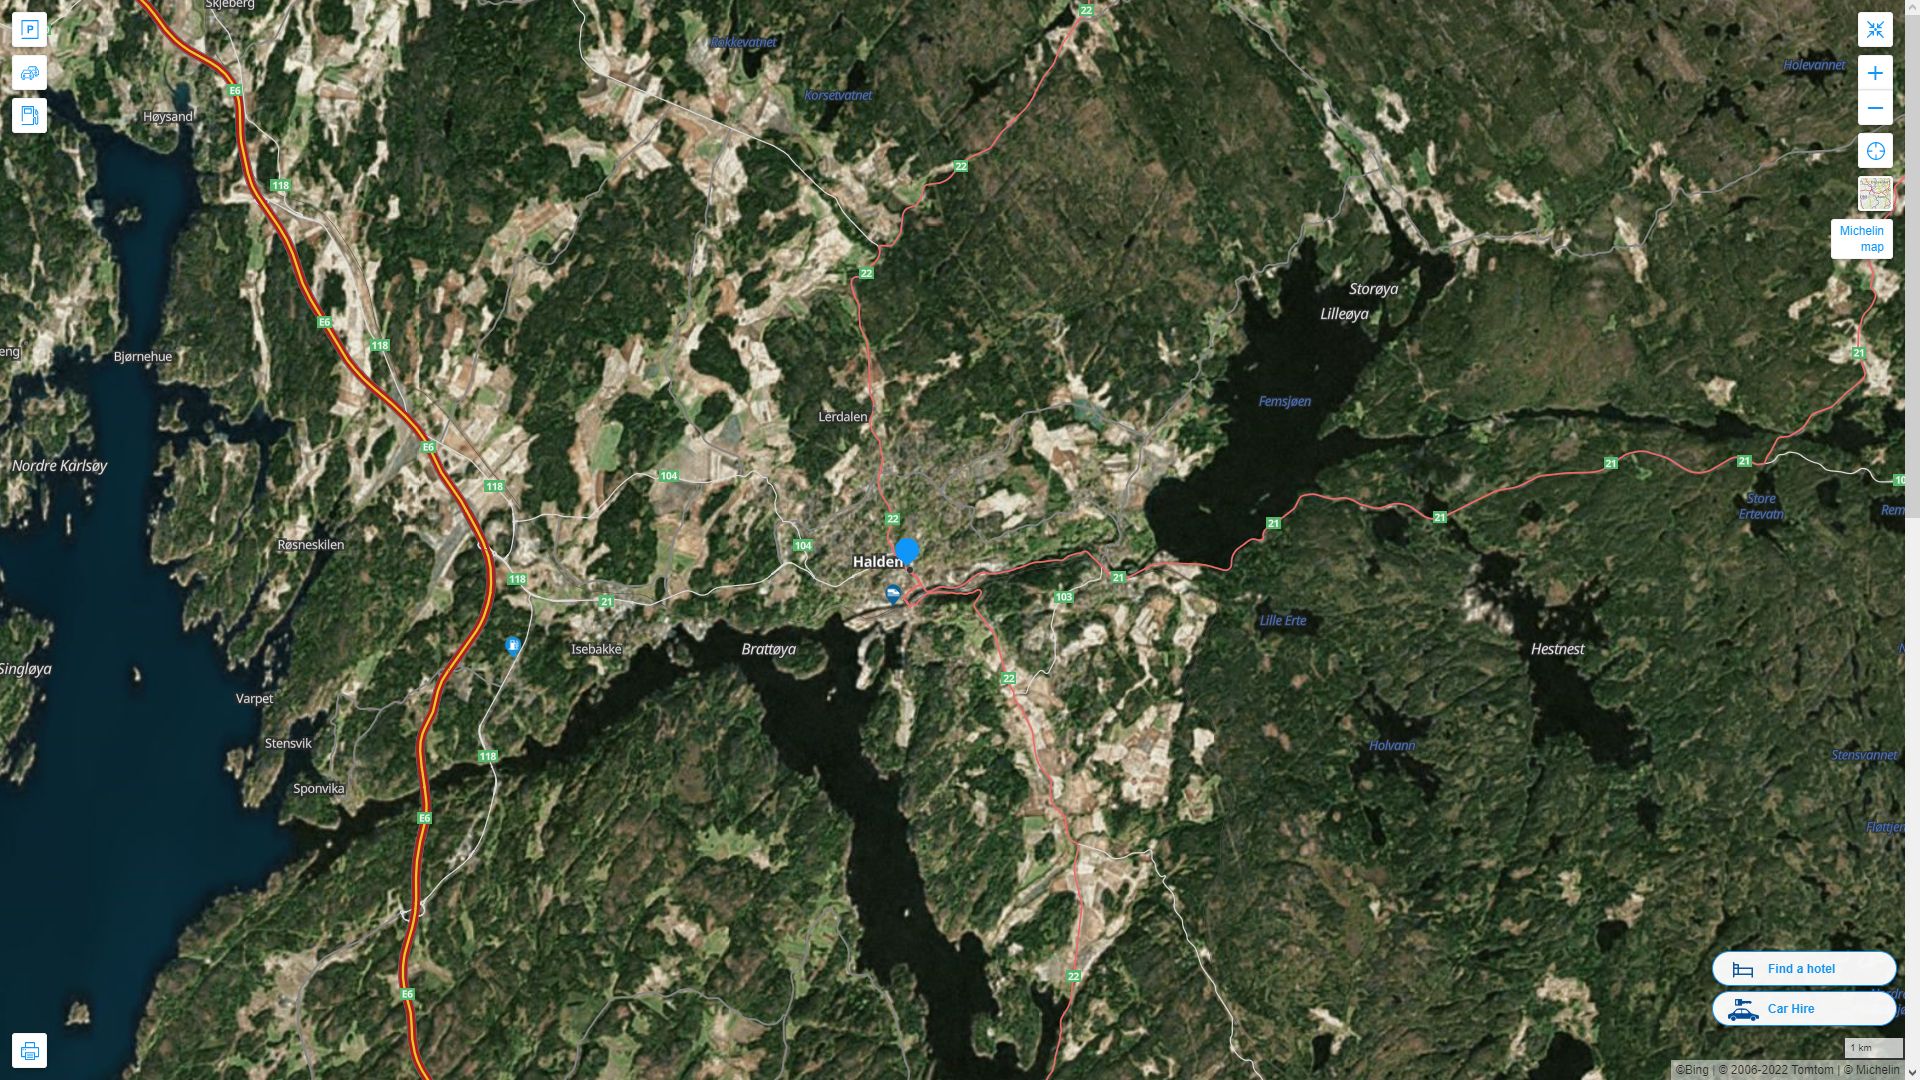 Halden Norvege Autoroute et carte routiere avec vue satellite